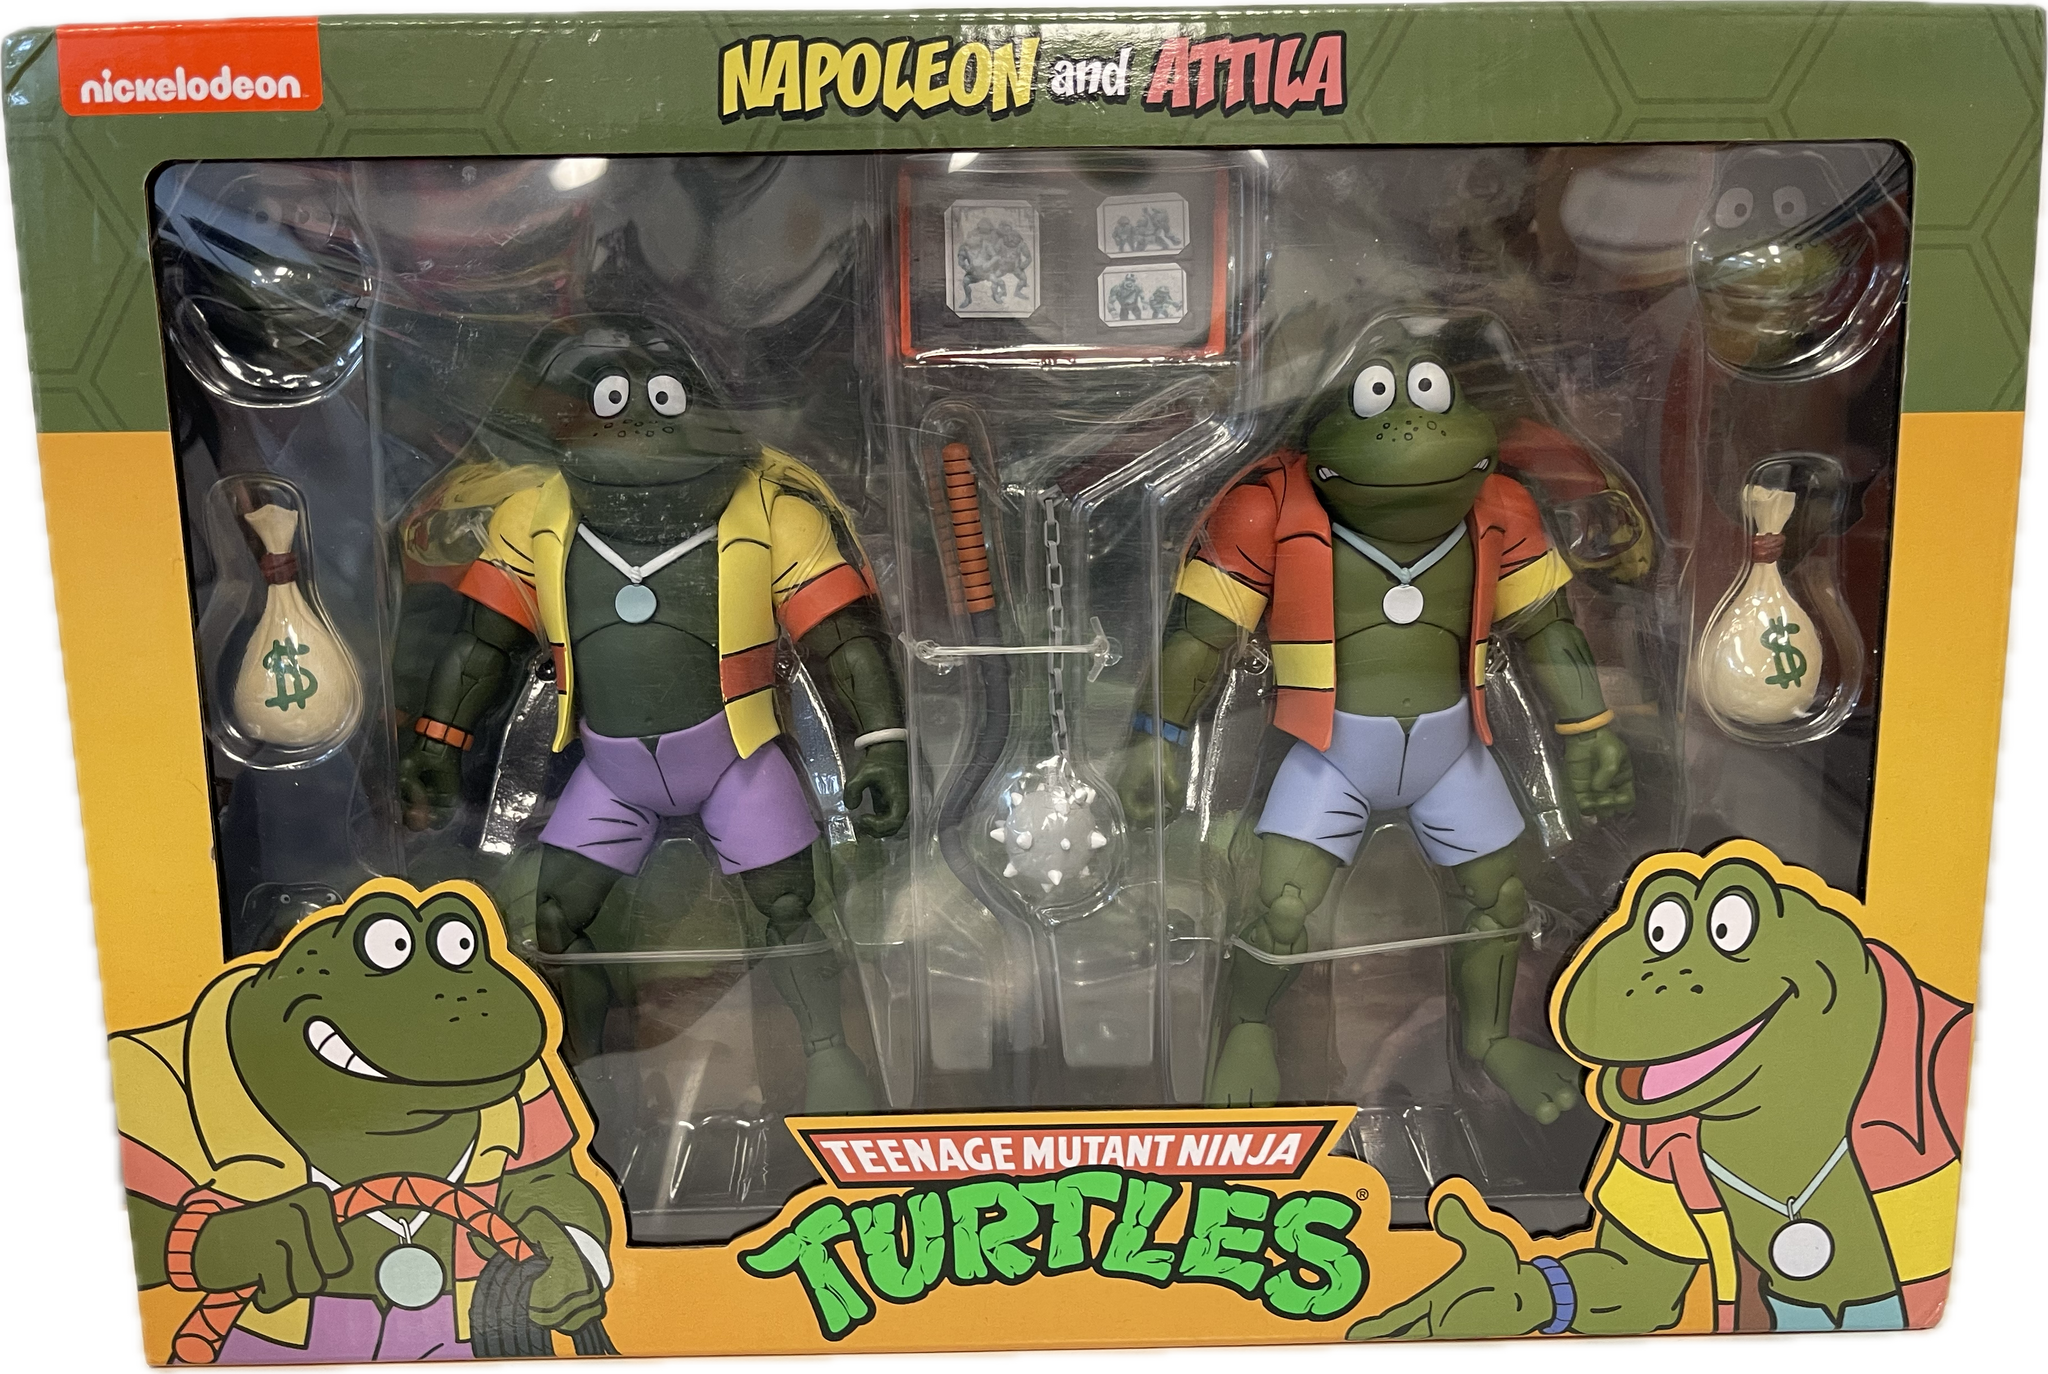 Teenage Mutant Ninja Turtles Napoleon & Attila